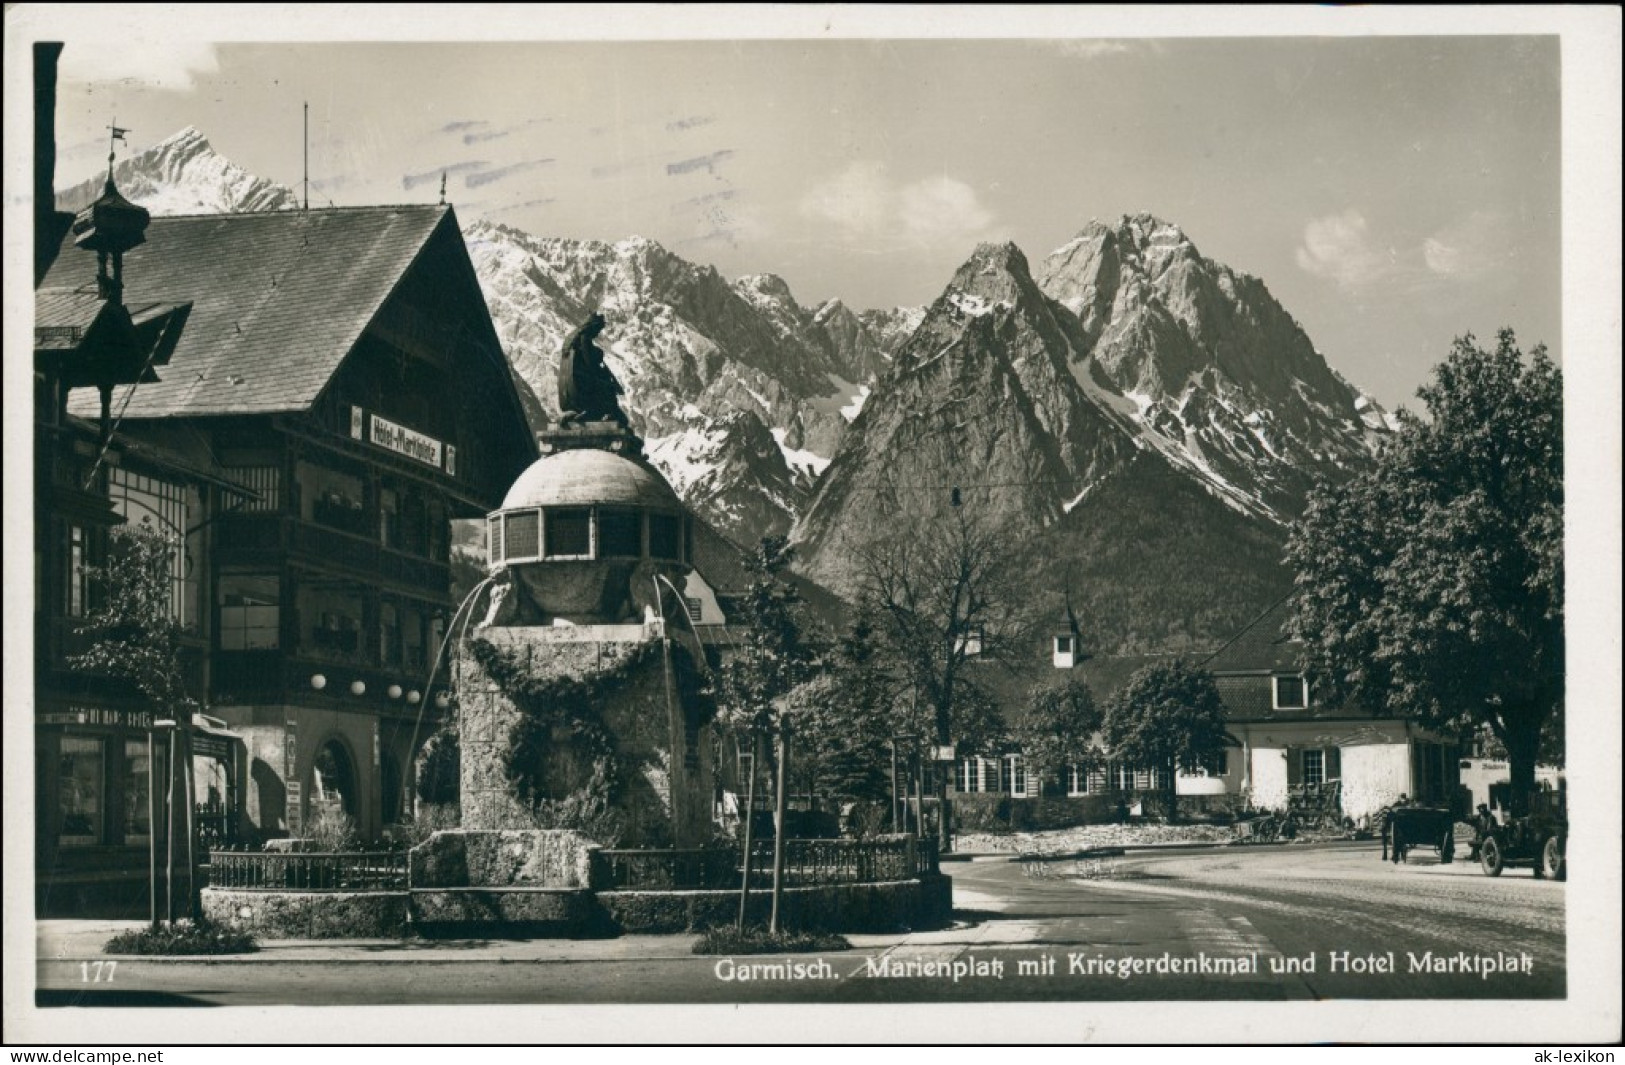 Ansichtskarte Berchtesgaden Marienplatz Kriegerdenkmal Hotel 1932 - Berchtesgaden